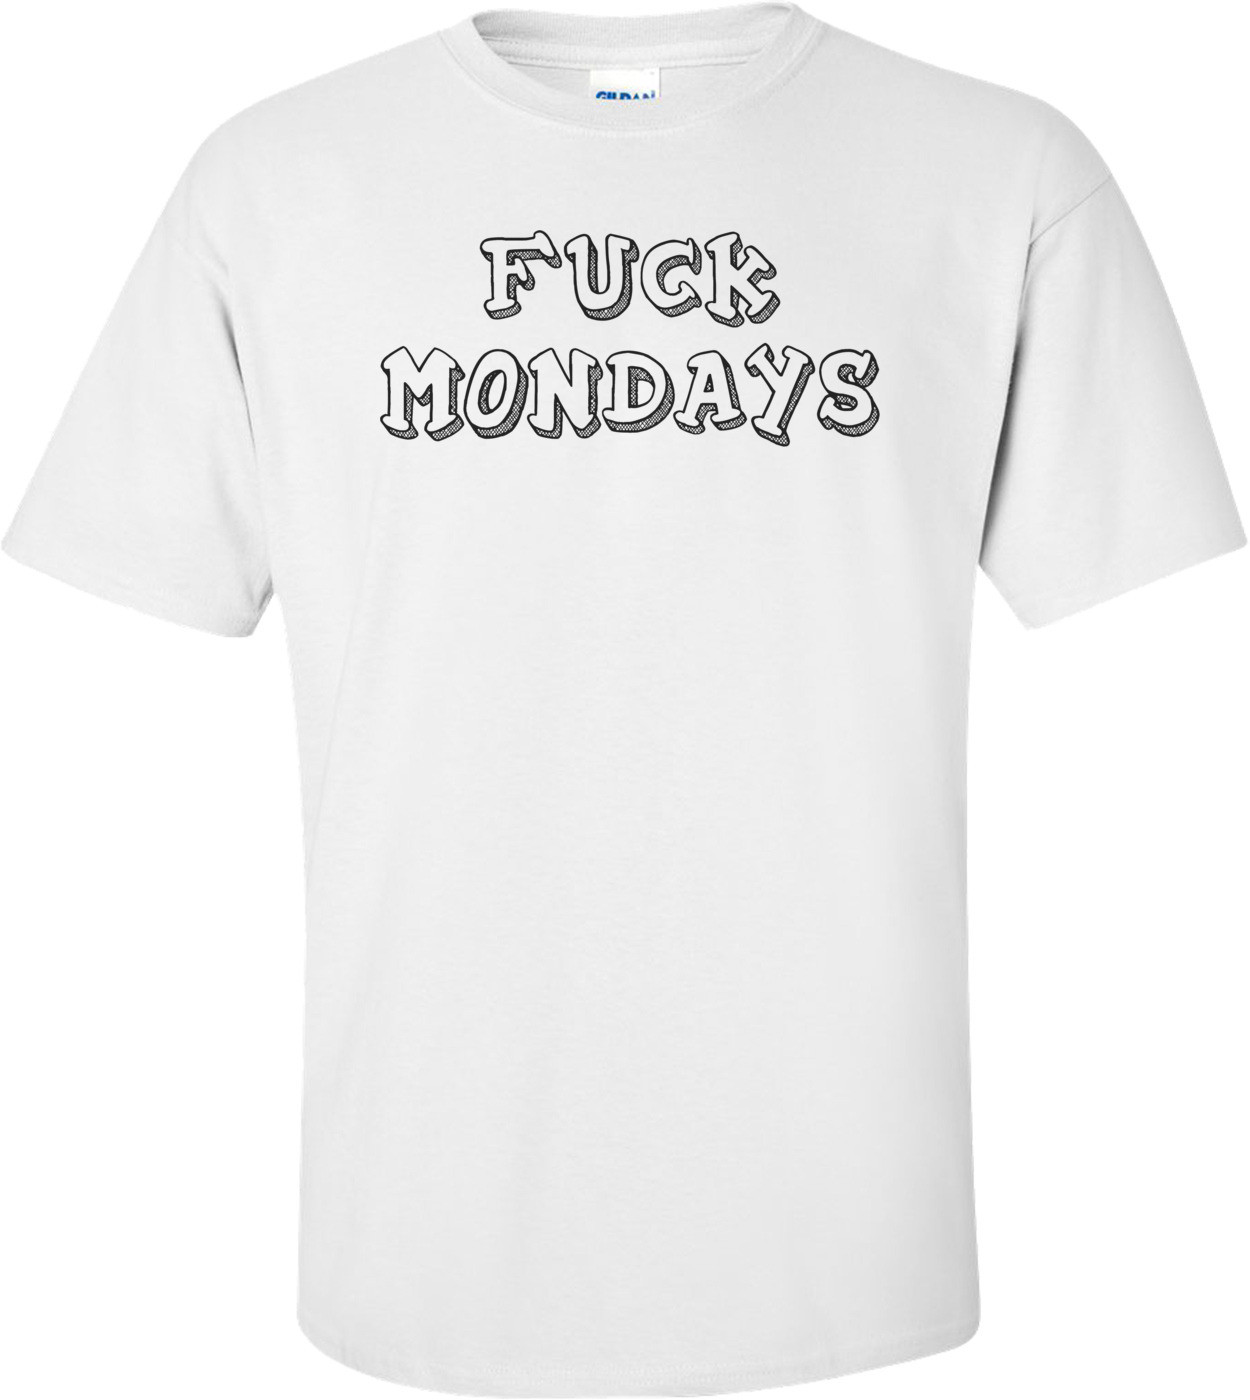 FUCK MONDAYS Shirt